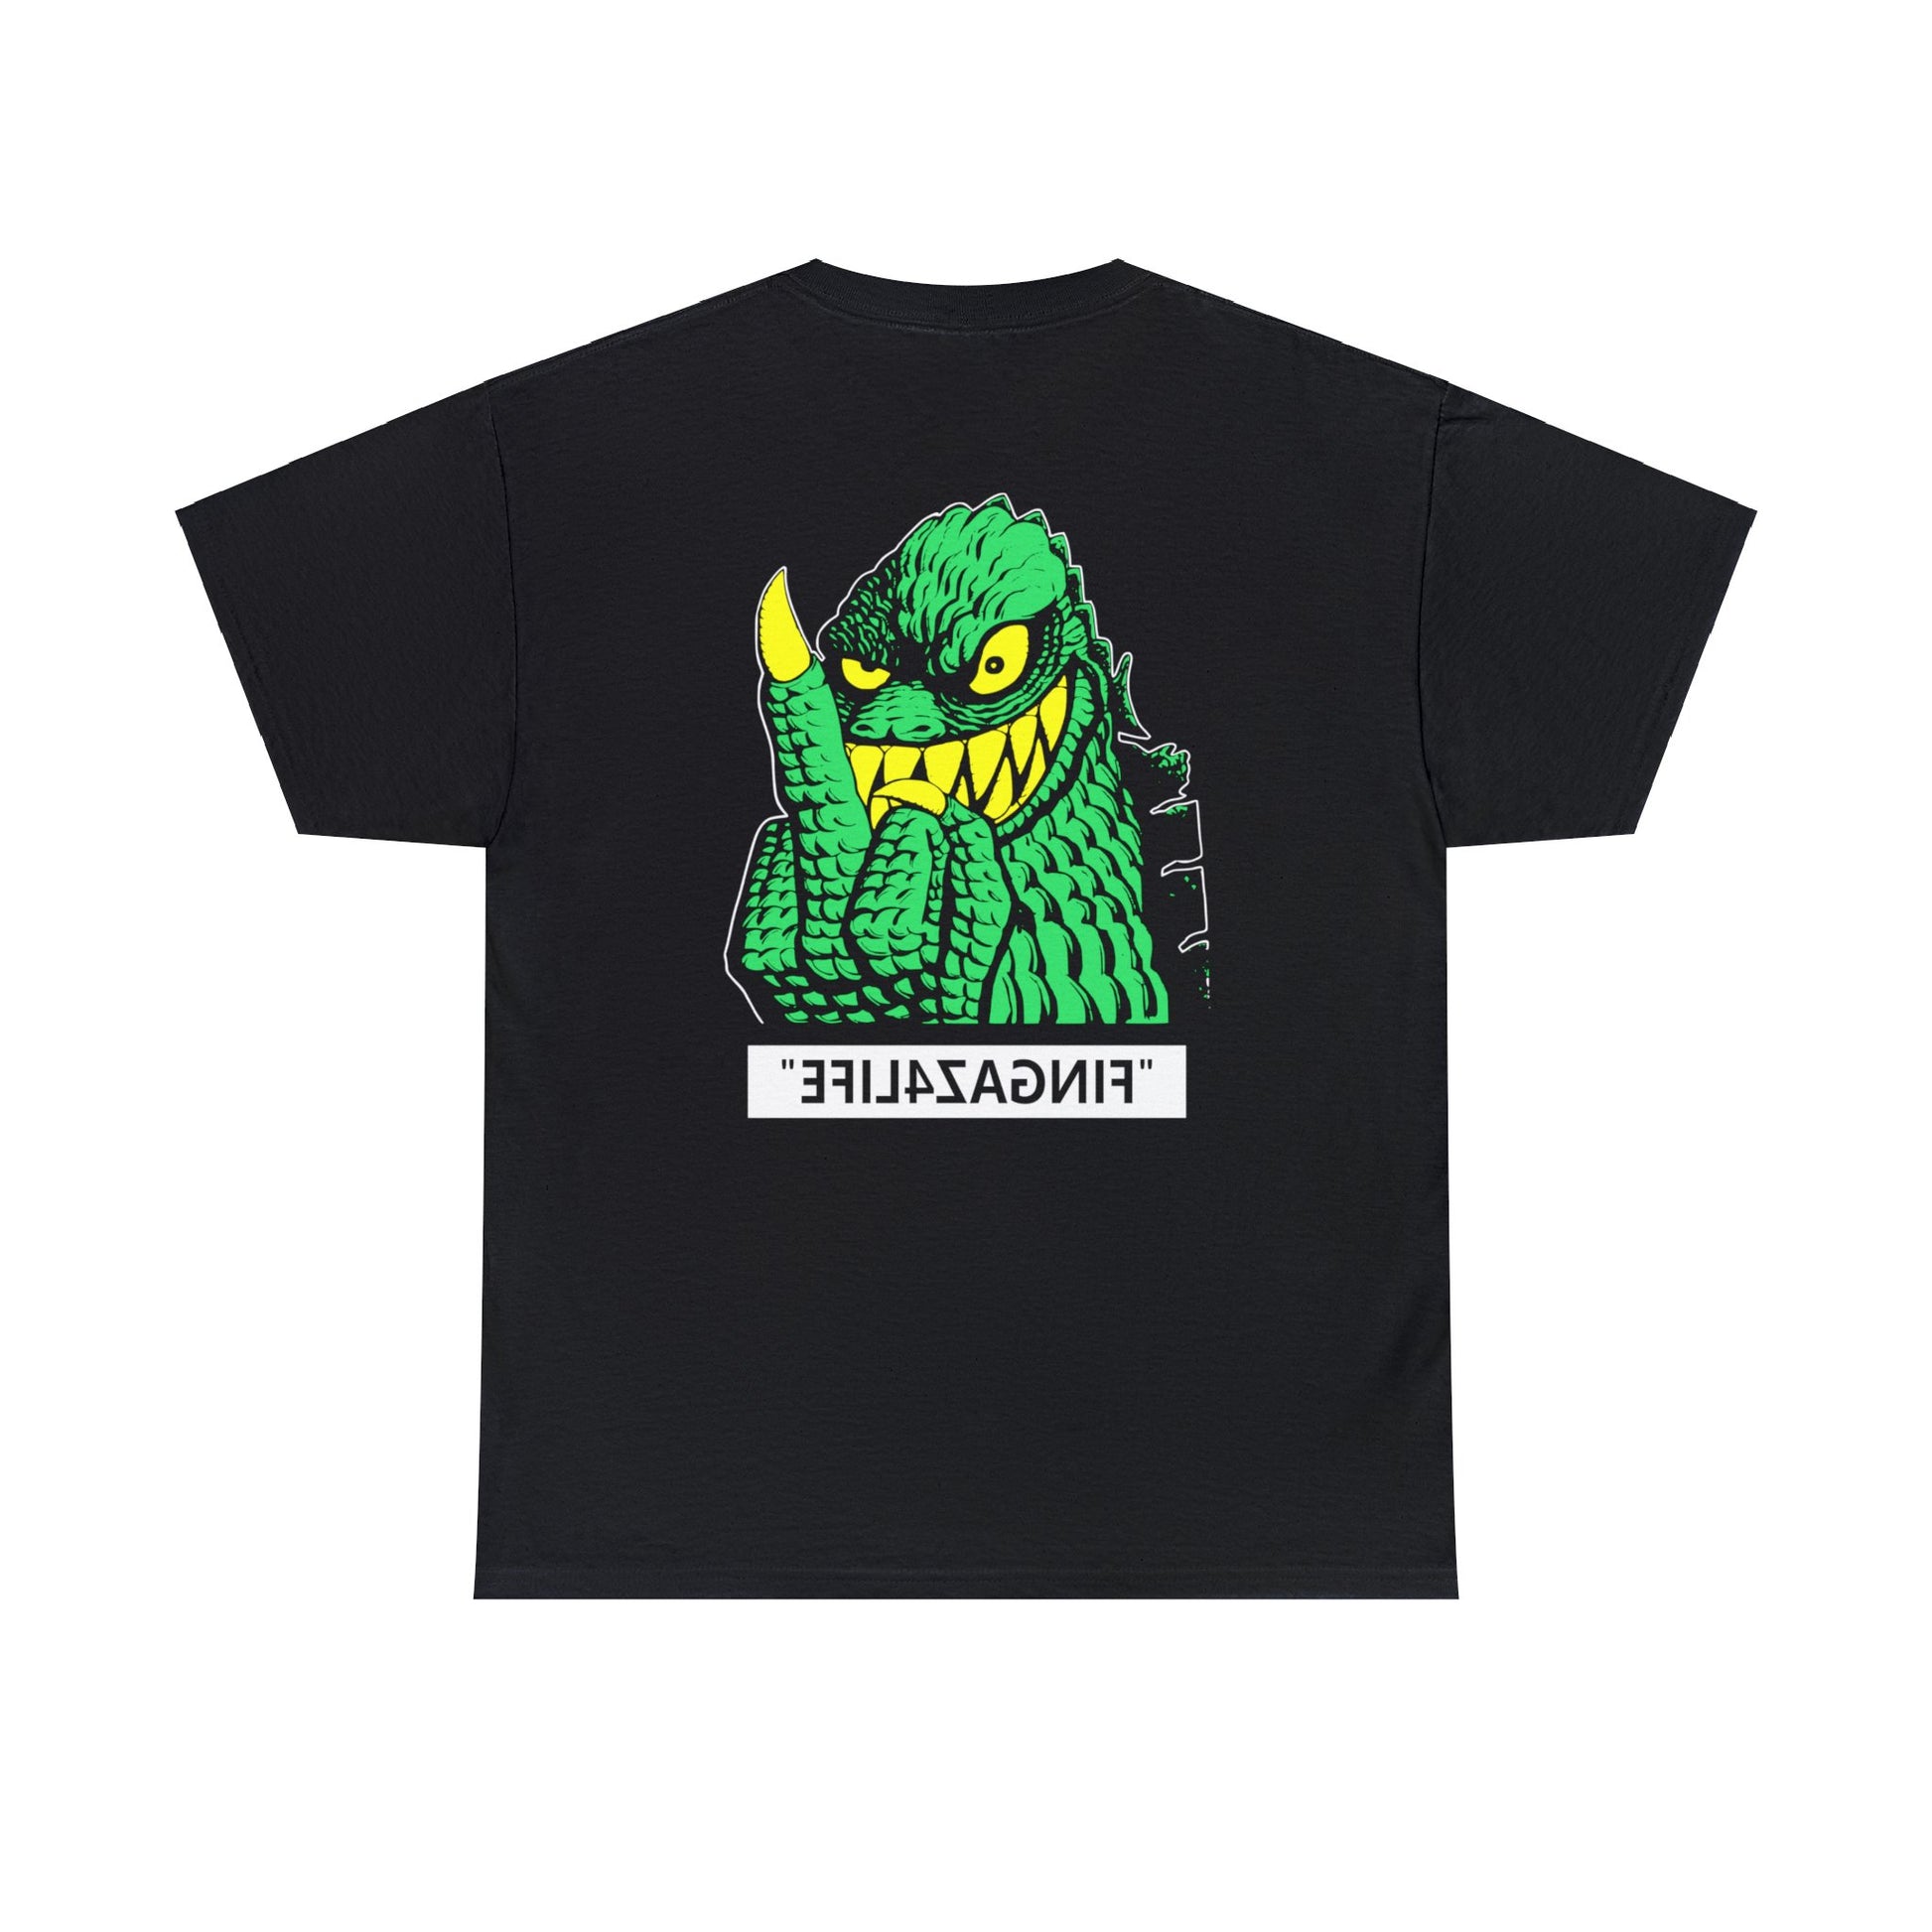 Soundgarden Badmotorfinger Fingaz Life Chris Cornell 1992 T-shirt for Sale